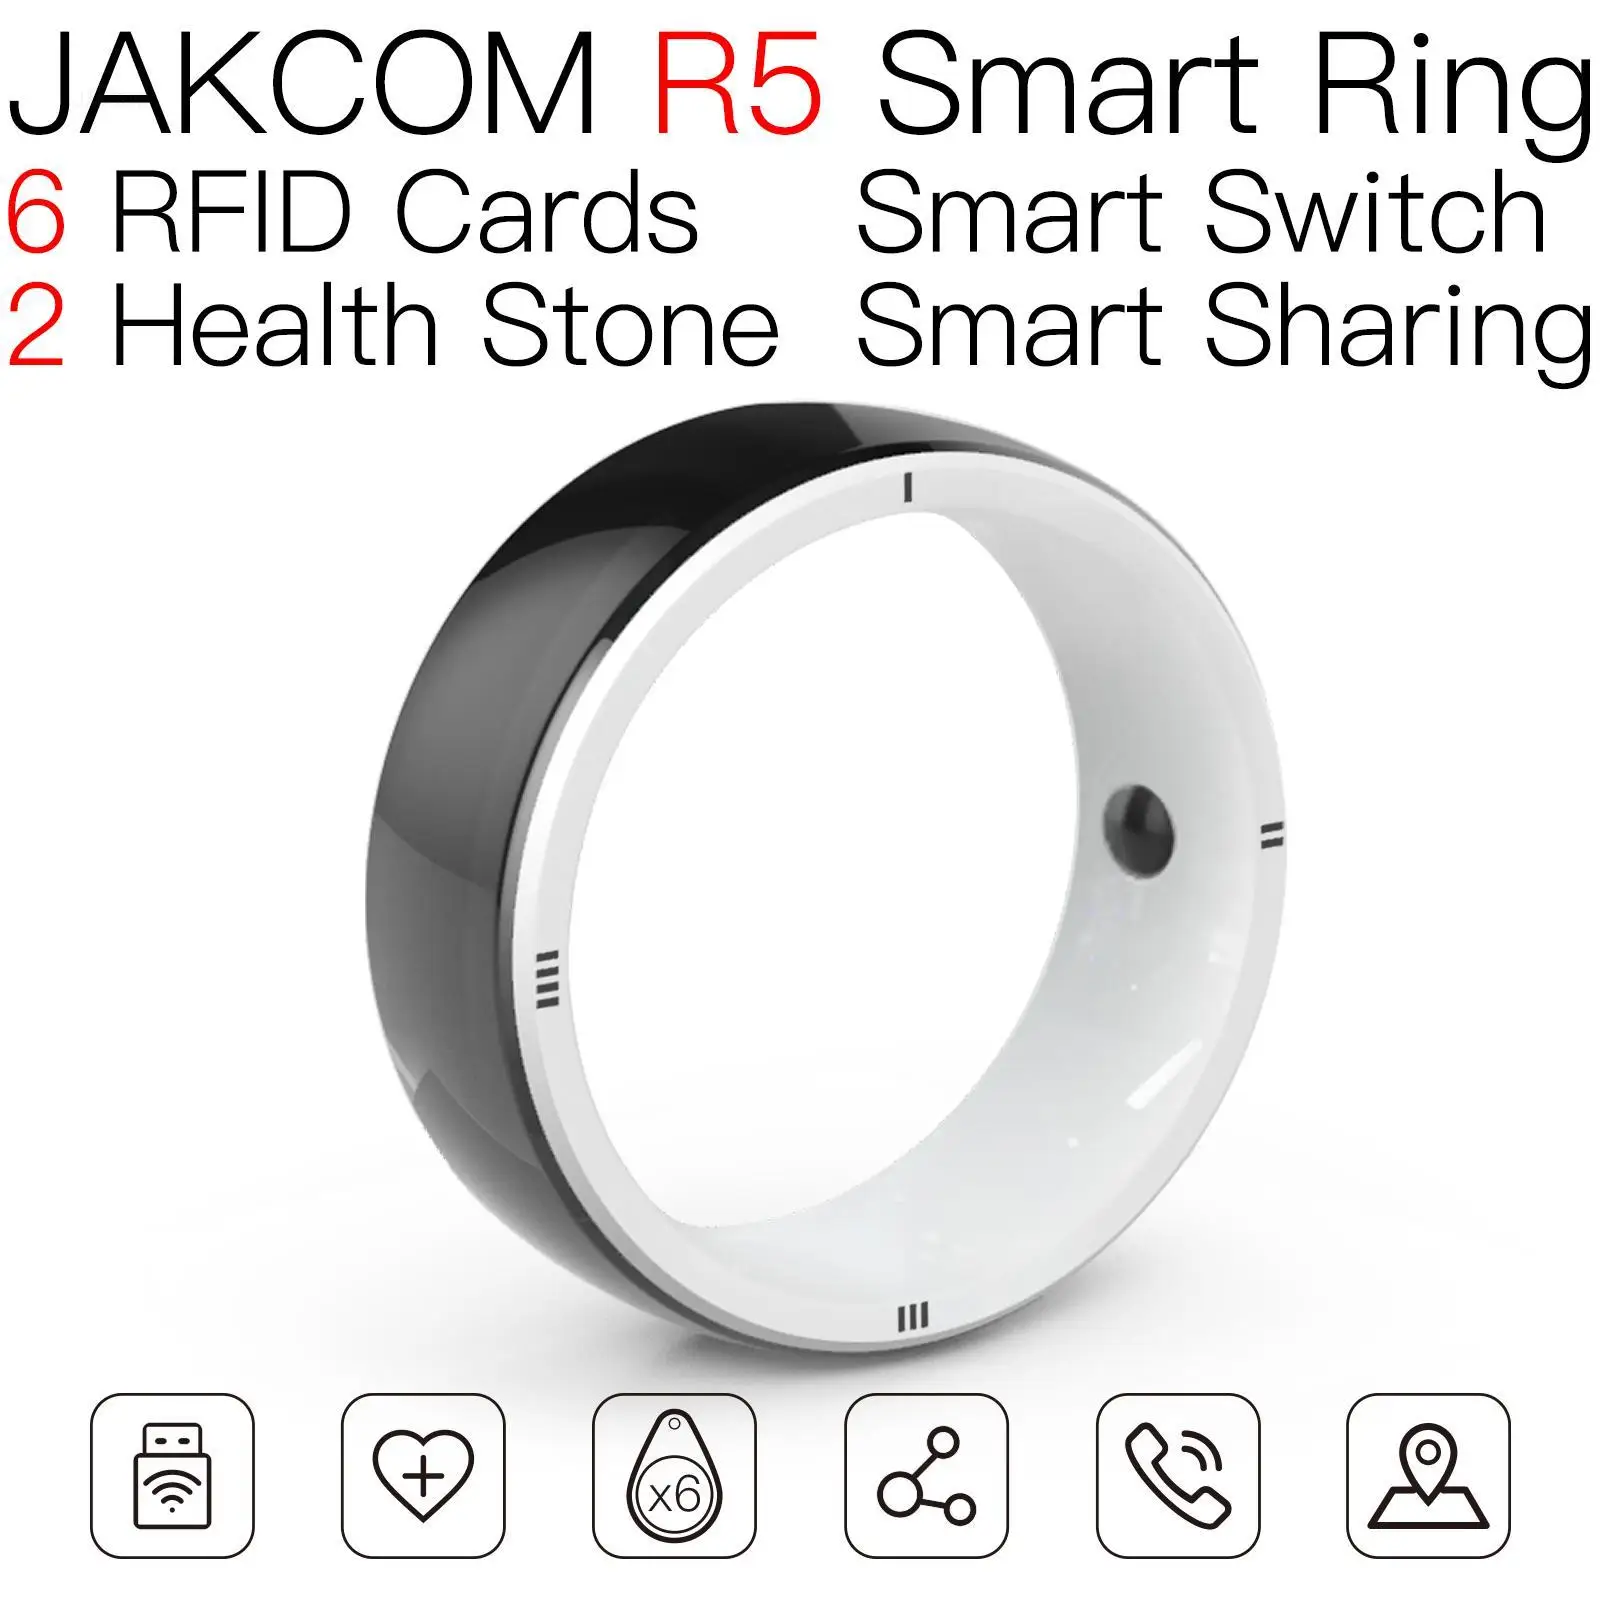 

Новое поступление, умное кольцо JAKCOM R5 в виде часов увлажнителя 3 mx9 m3, охладитель воздуха, умные гаджеты, Волшебная камера xiaomo бесплатно